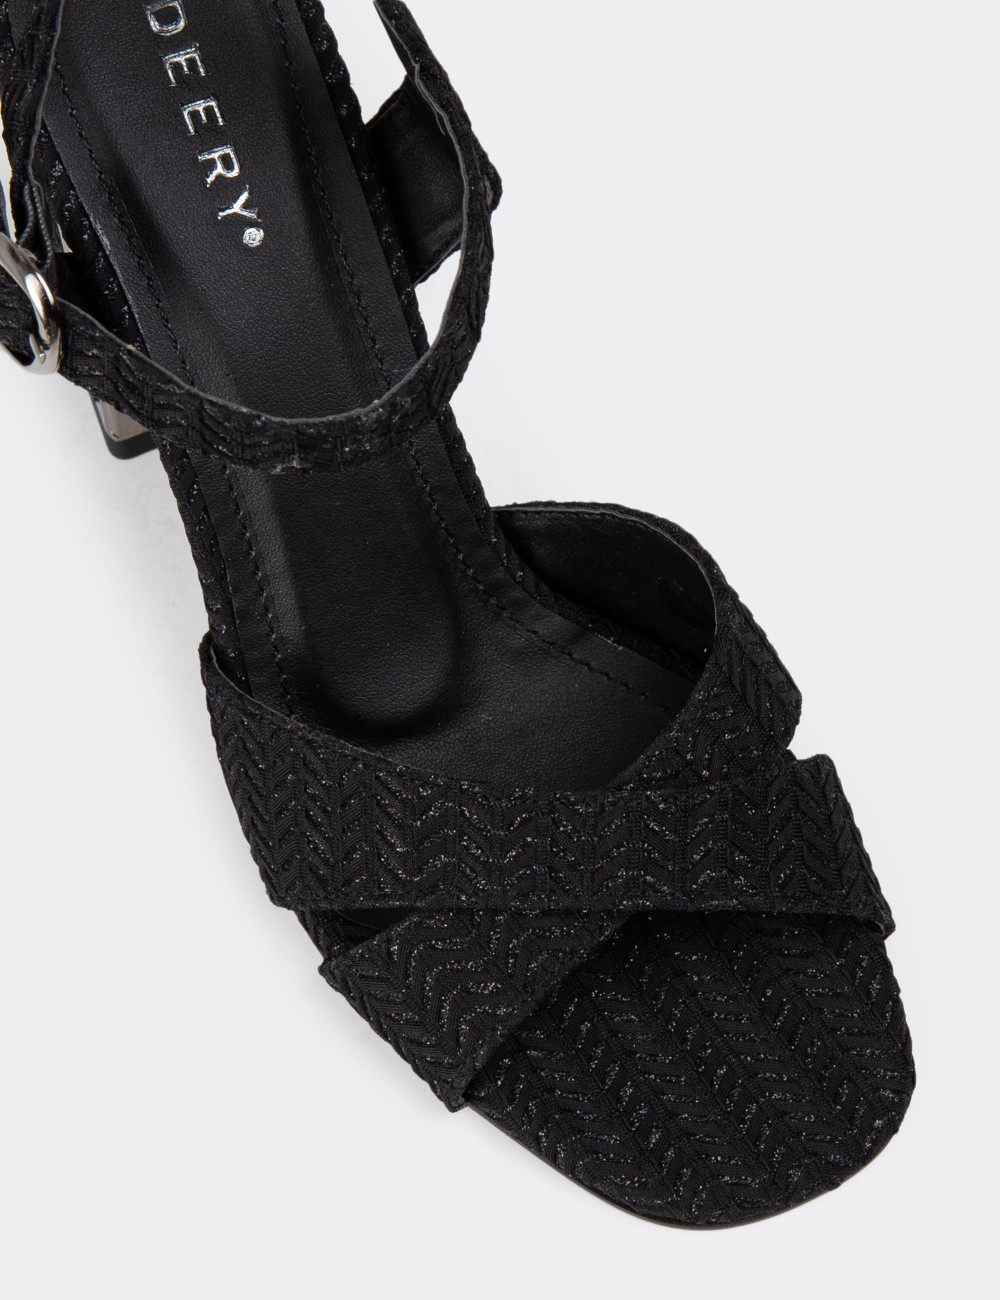 Siyah Topuklu Kadın Ayakkabı - K4000ZSYHM01